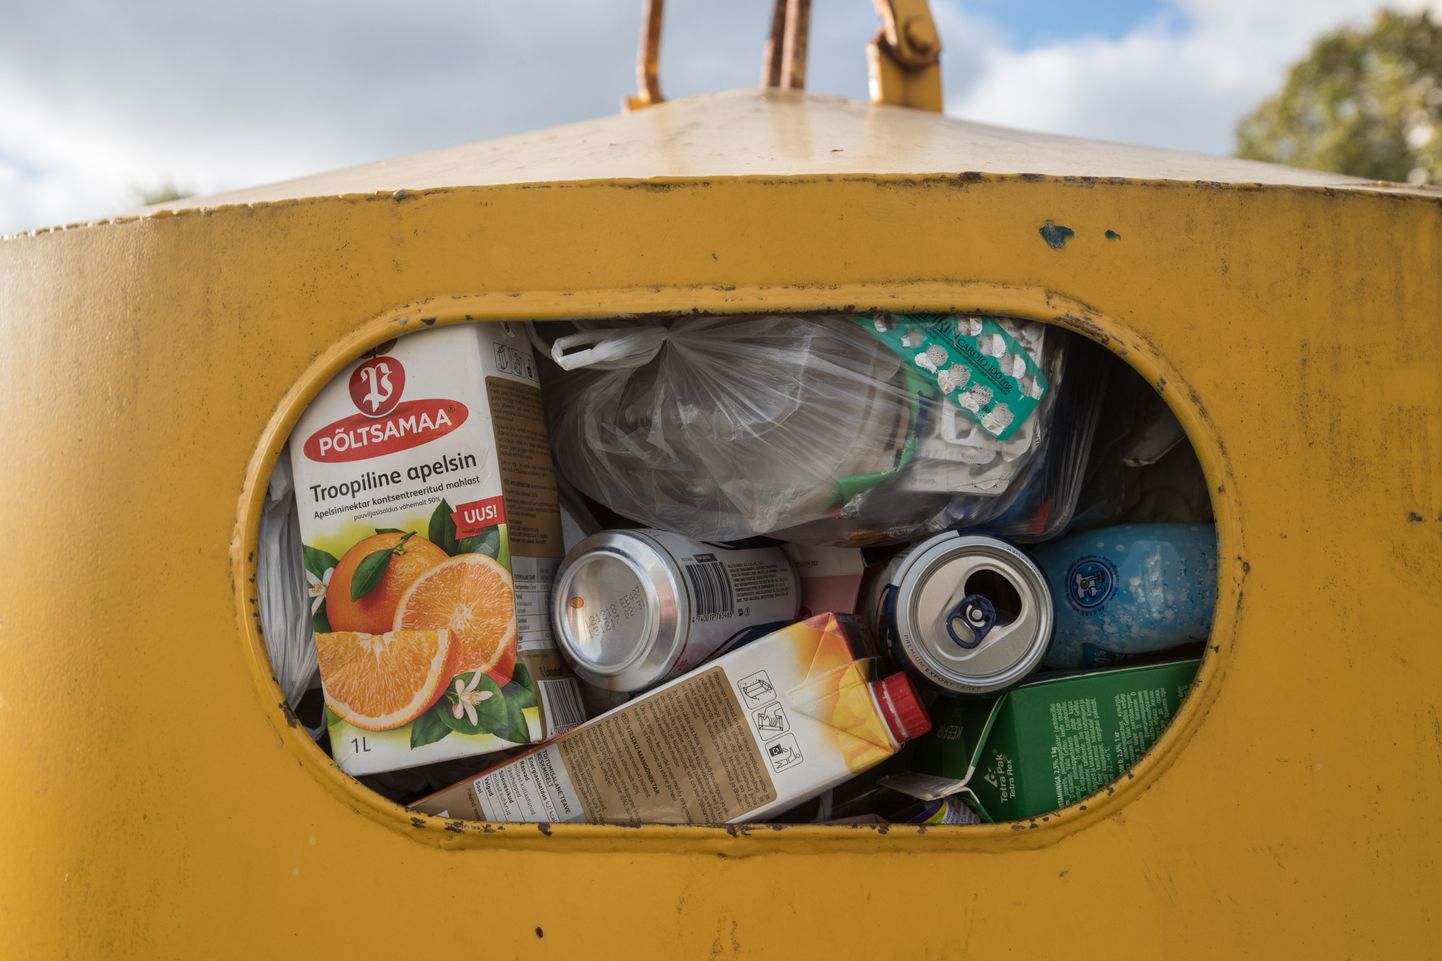 Väga vähesed hea elujärjega riigid saavad endale lubada minister Kiisleri välja pakutud kulukat pakendijäätmete lauskogumist igast kodumajapidamisest.